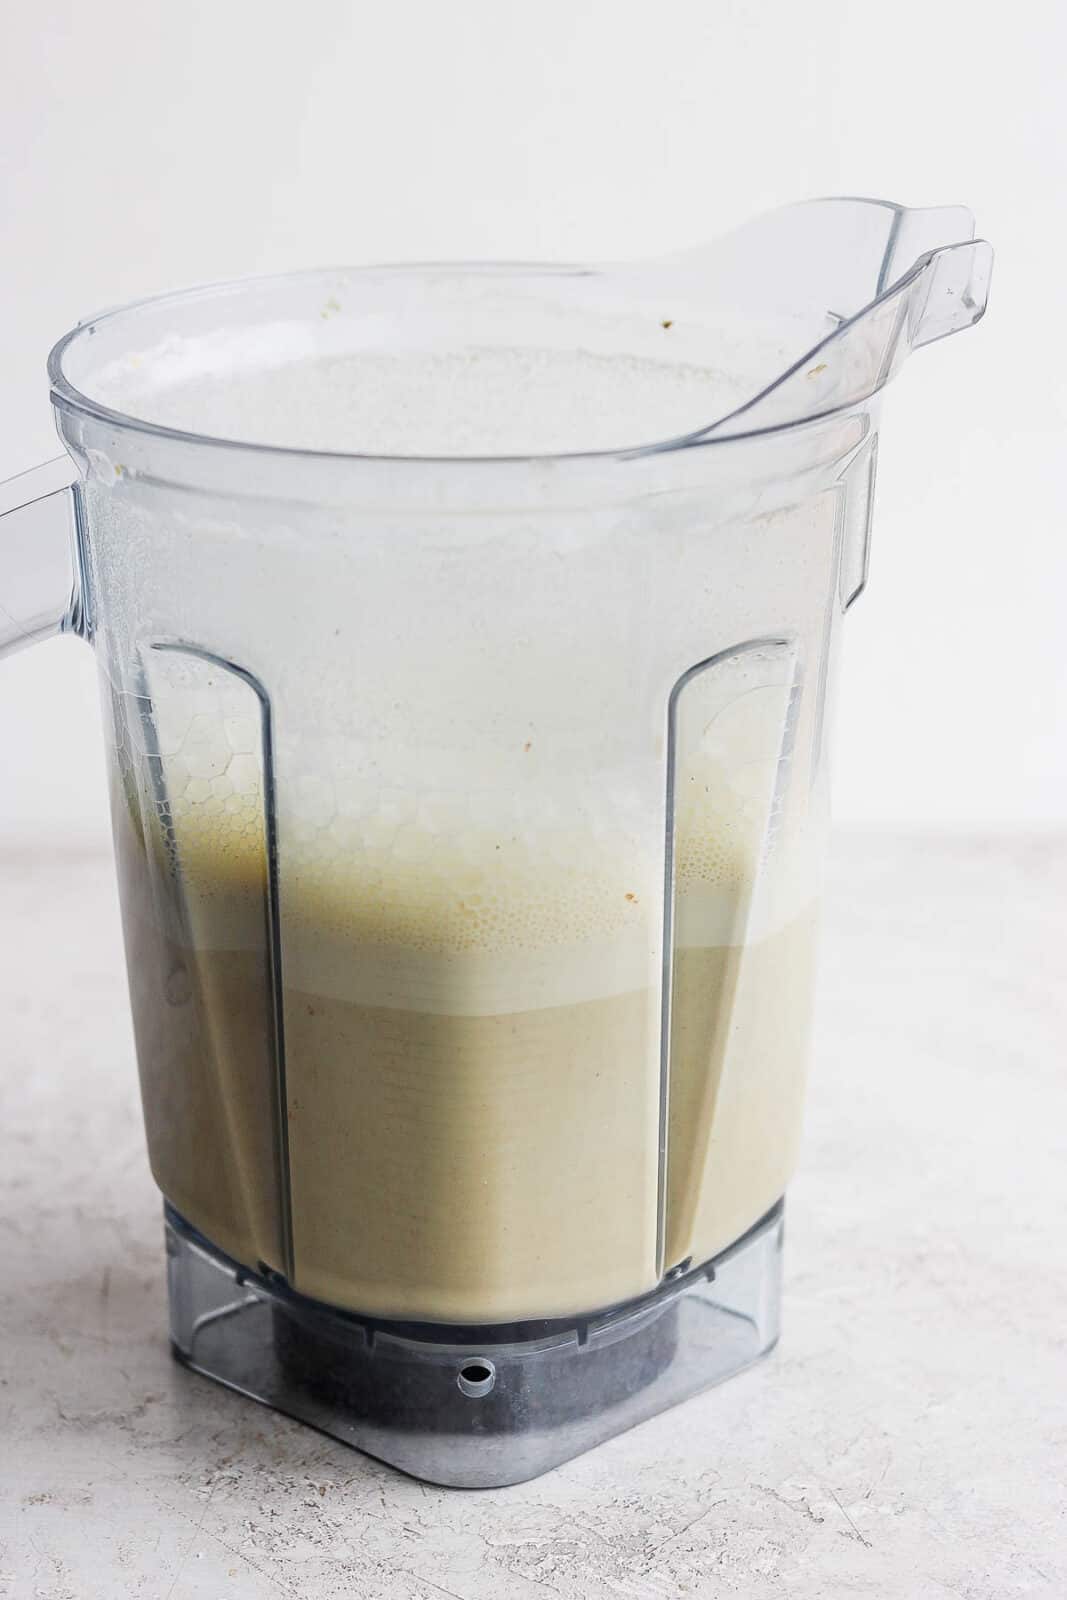 Blended pistachio milk in a blender.